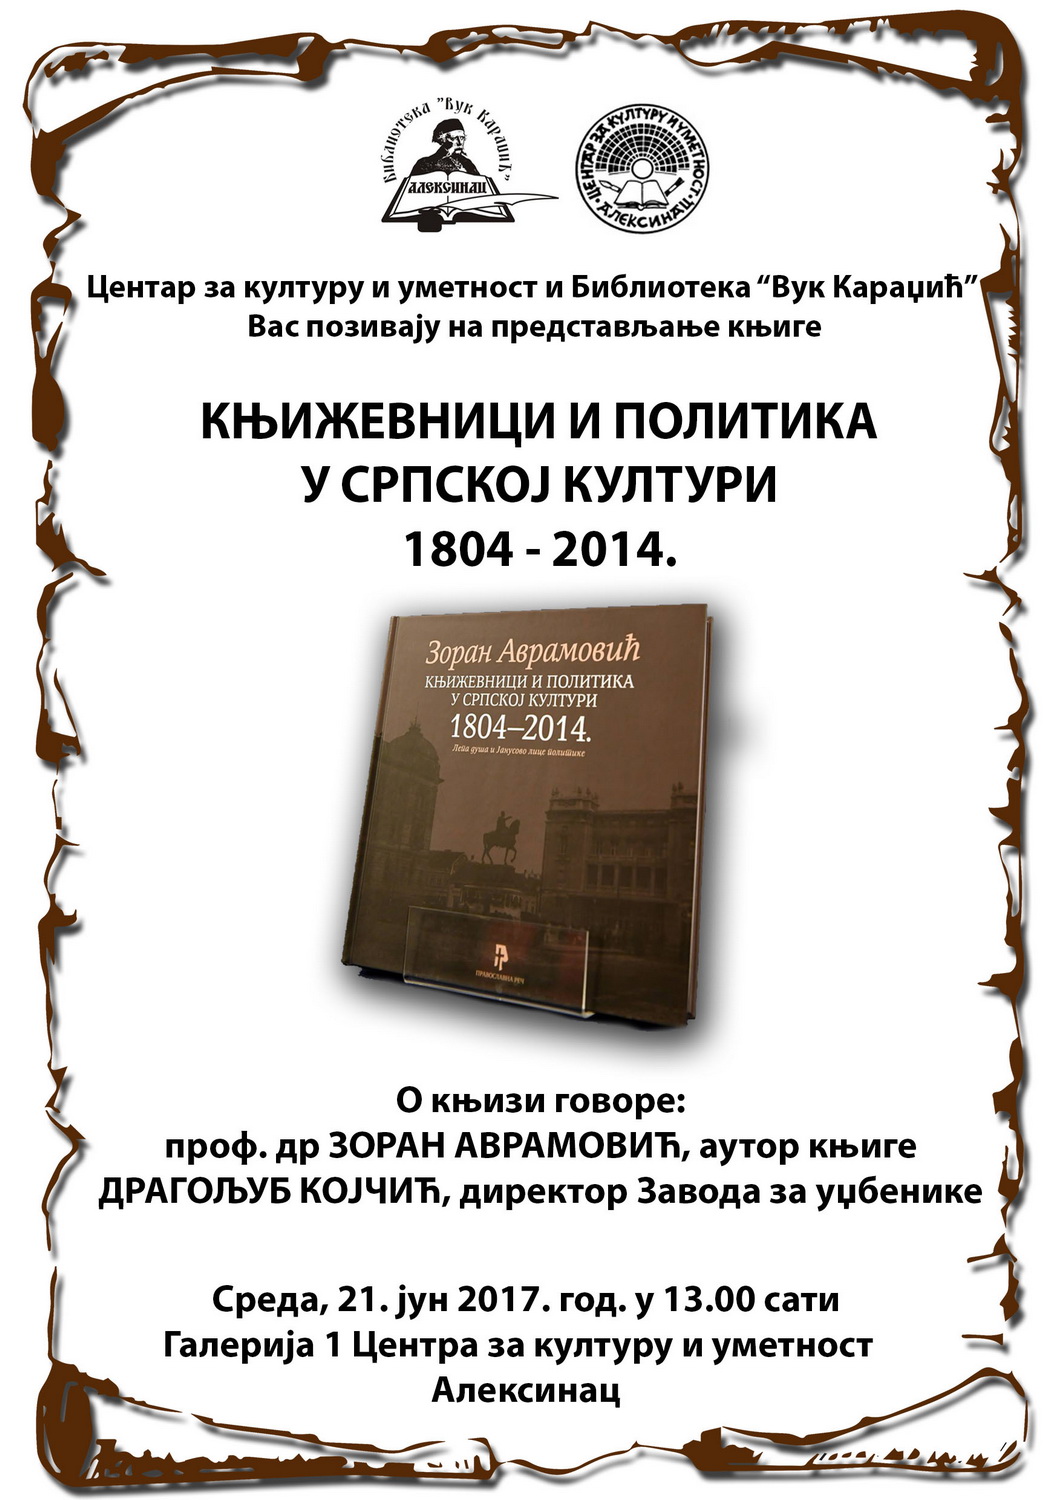 Промоција књиге <br>„Књижевници и политика <br>у српској култури 1804-2014.“